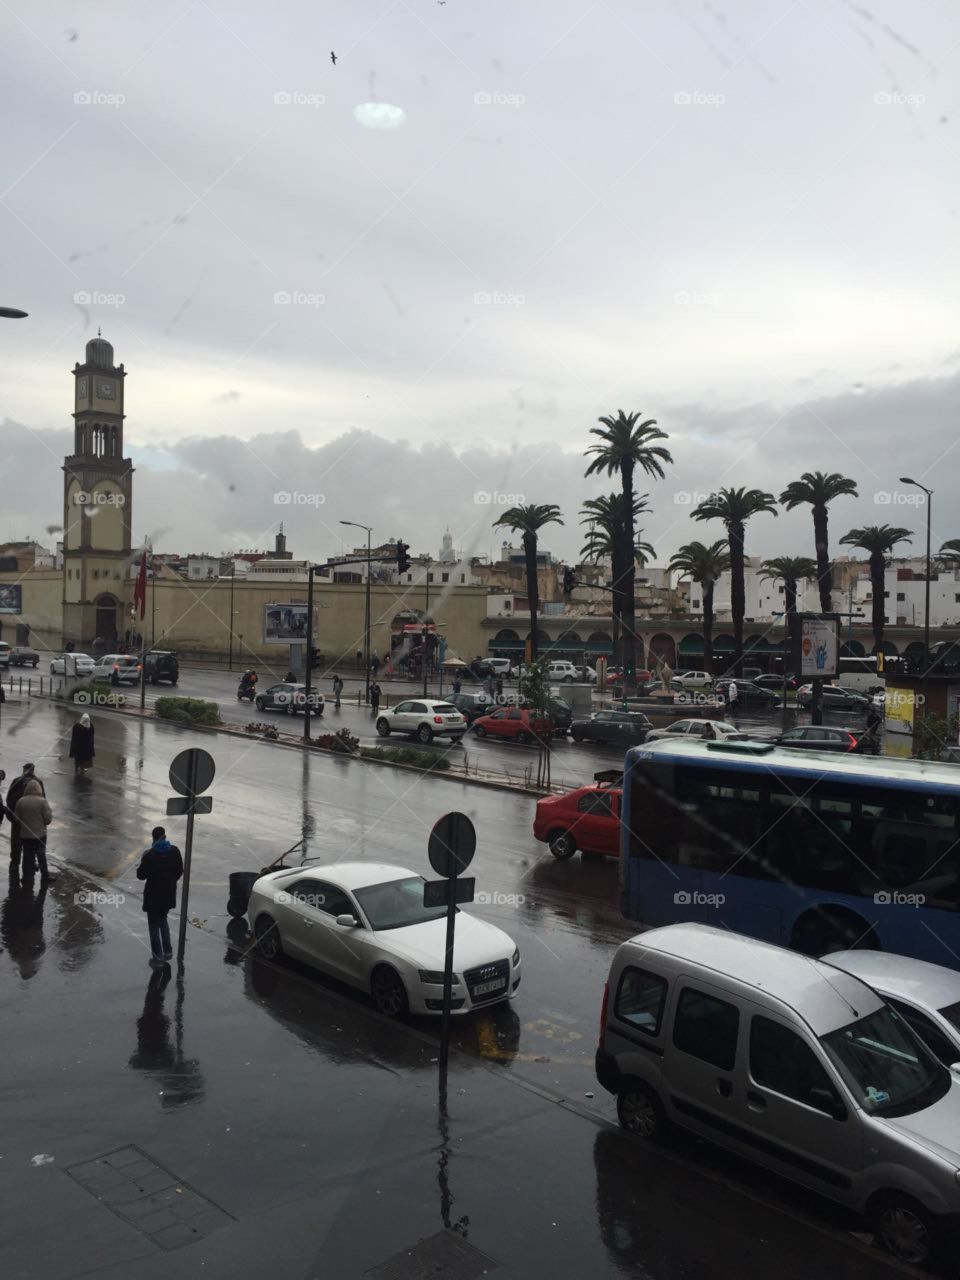 Casablanca Morocco gate of Merakech town center